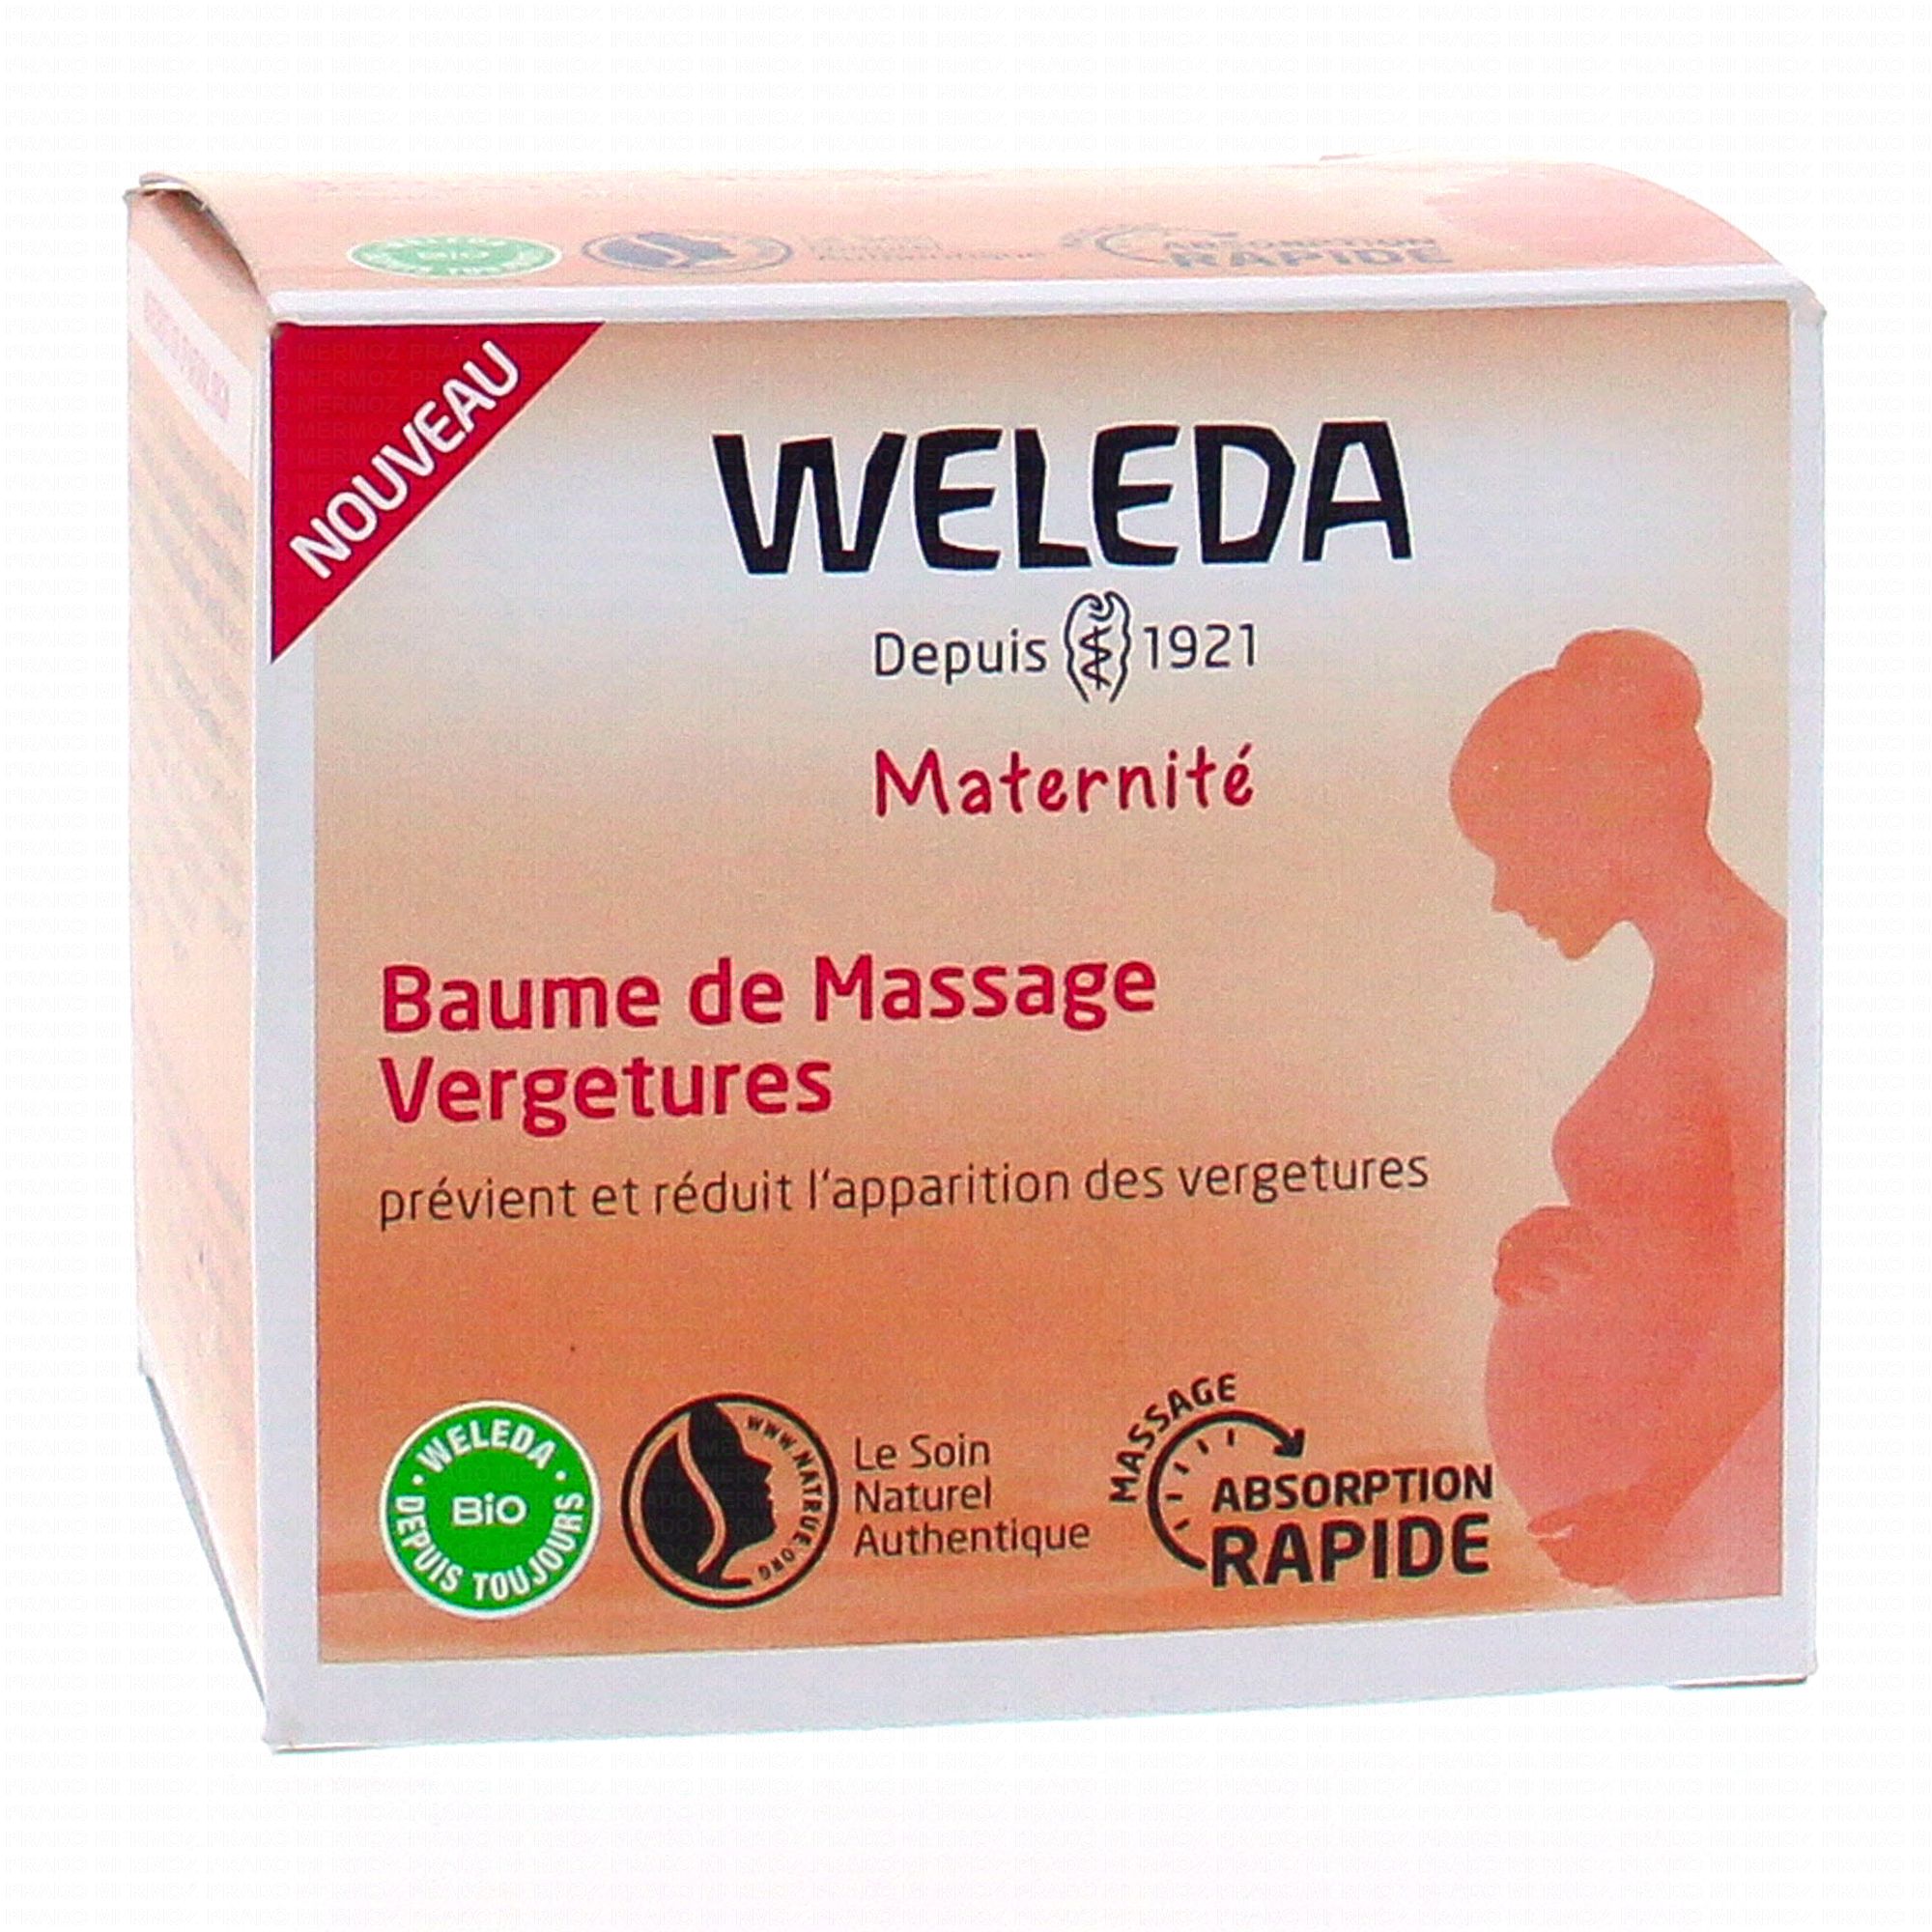 Huile de massage vergetures, Weleda, Grossesse